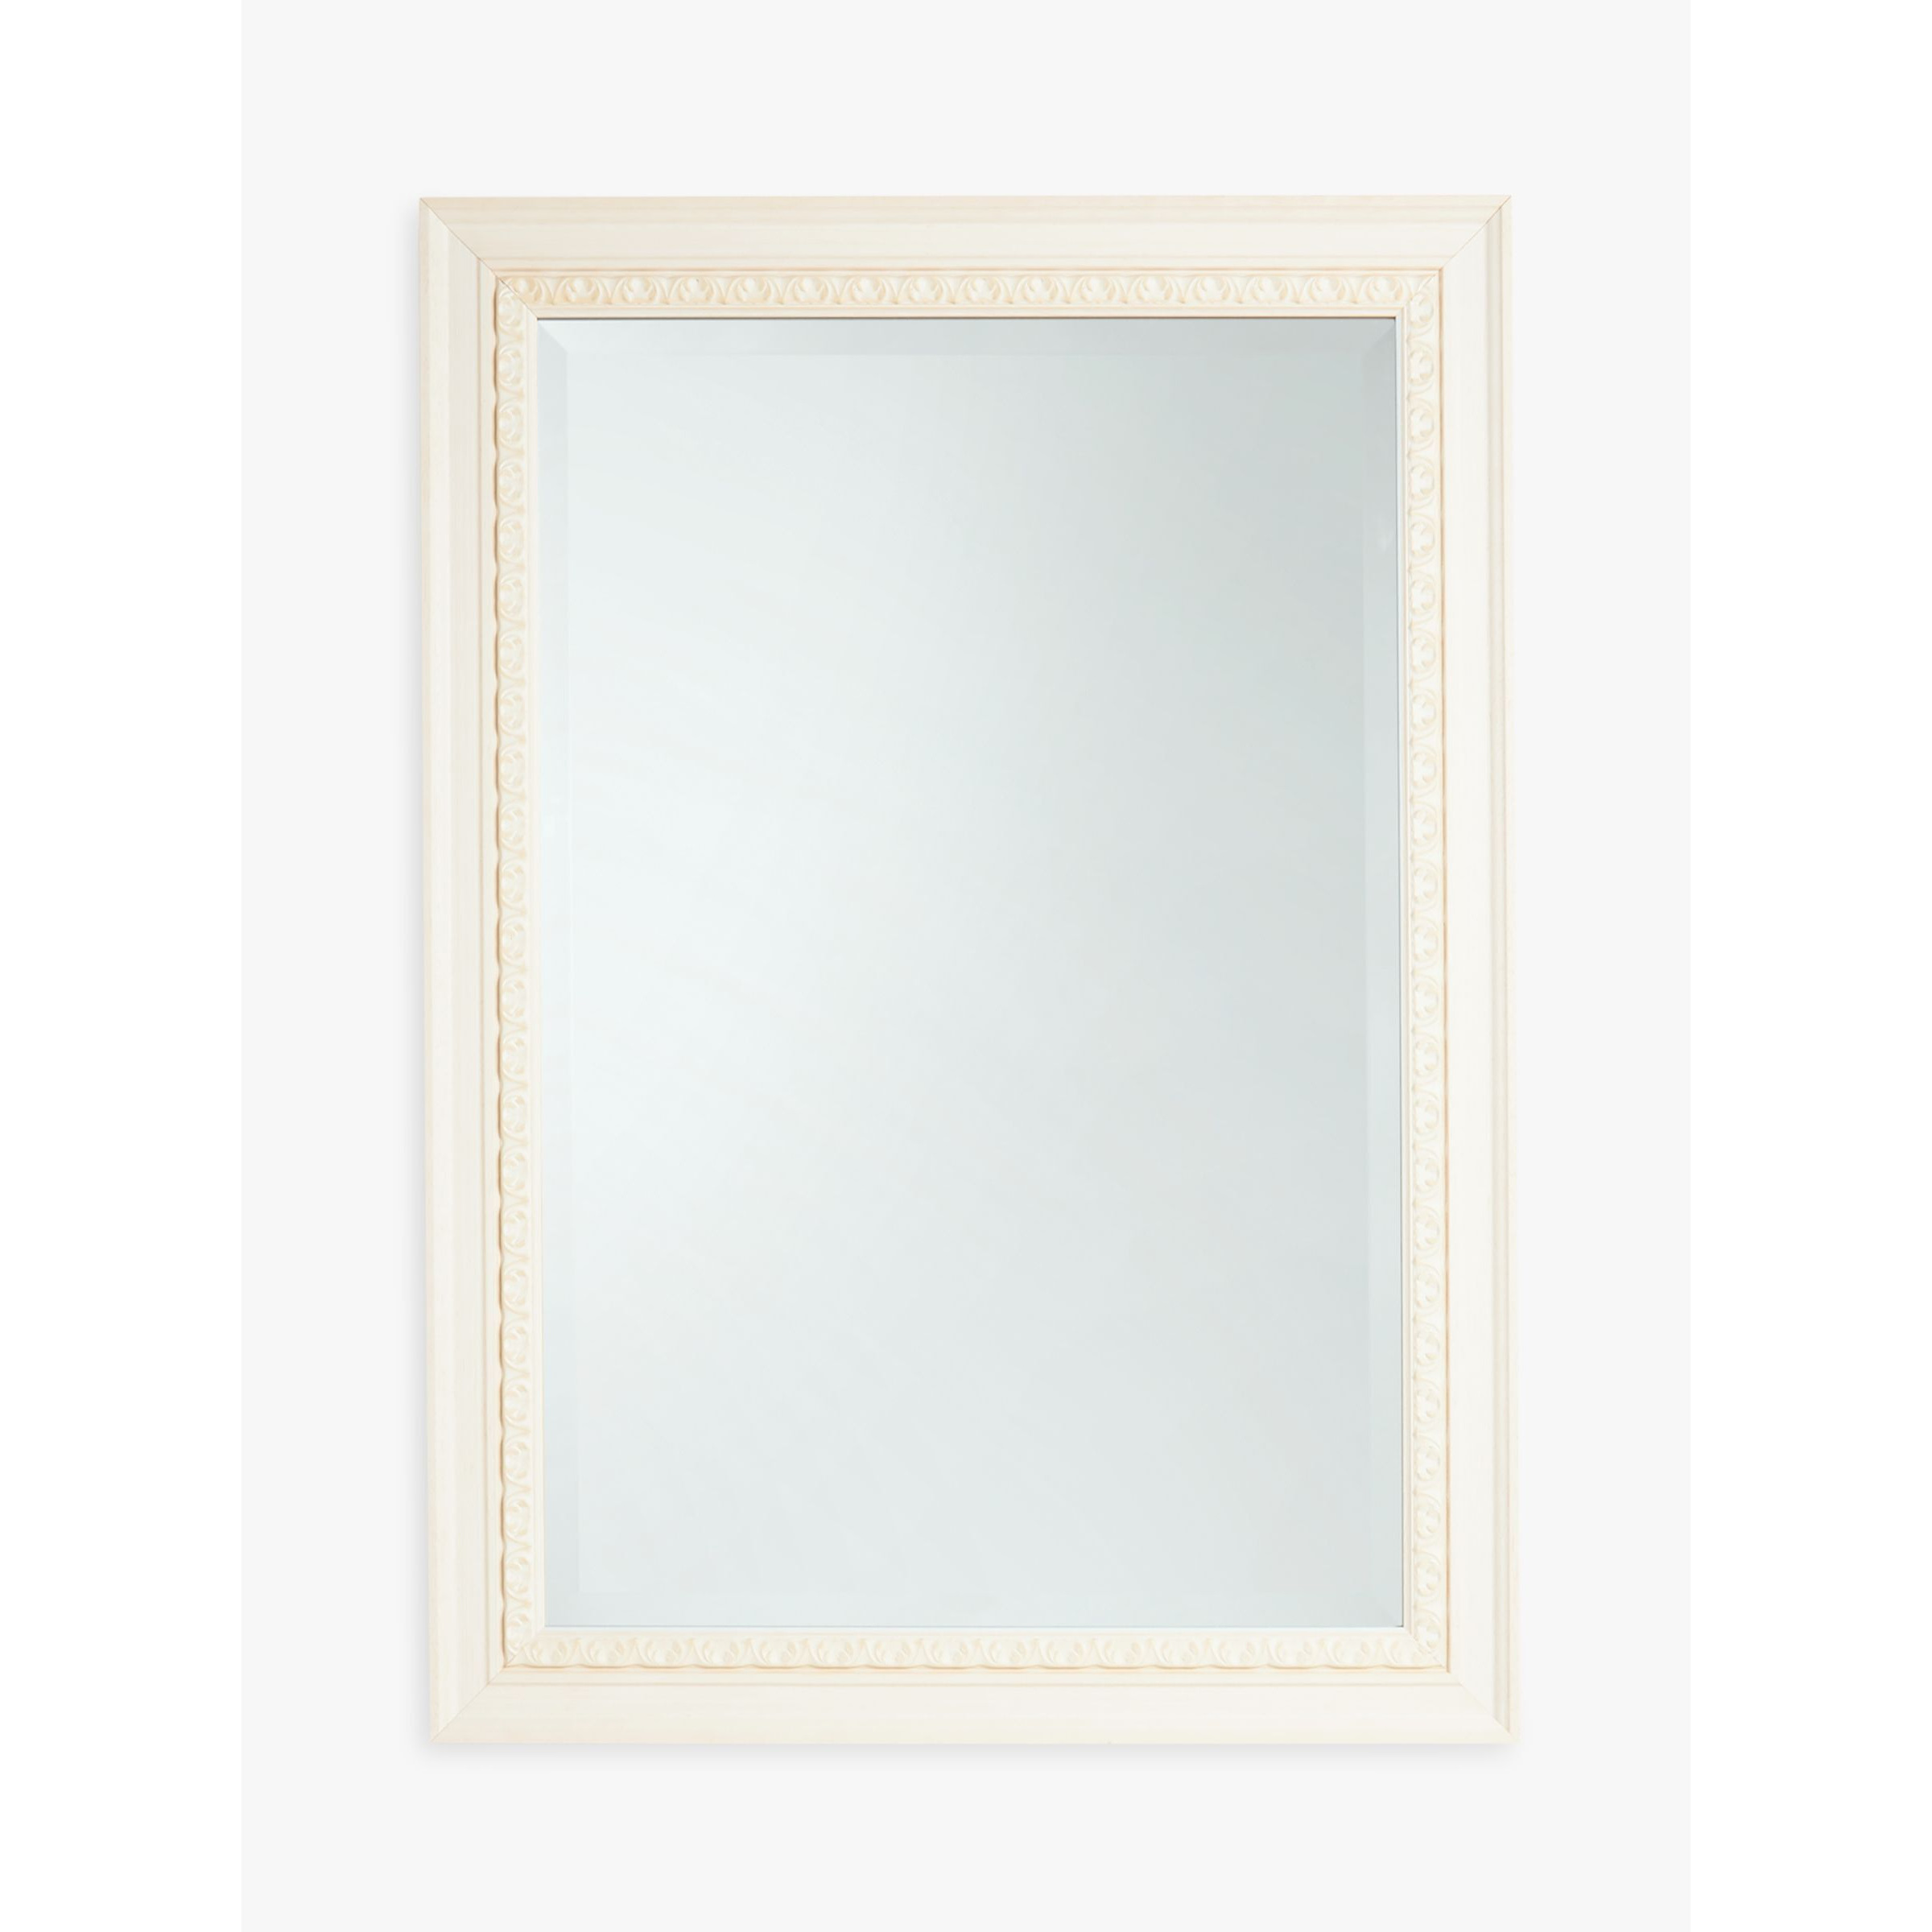 John Lewis Exeter Rectangular Wood Frame Wall Mirror, Cream - image 1